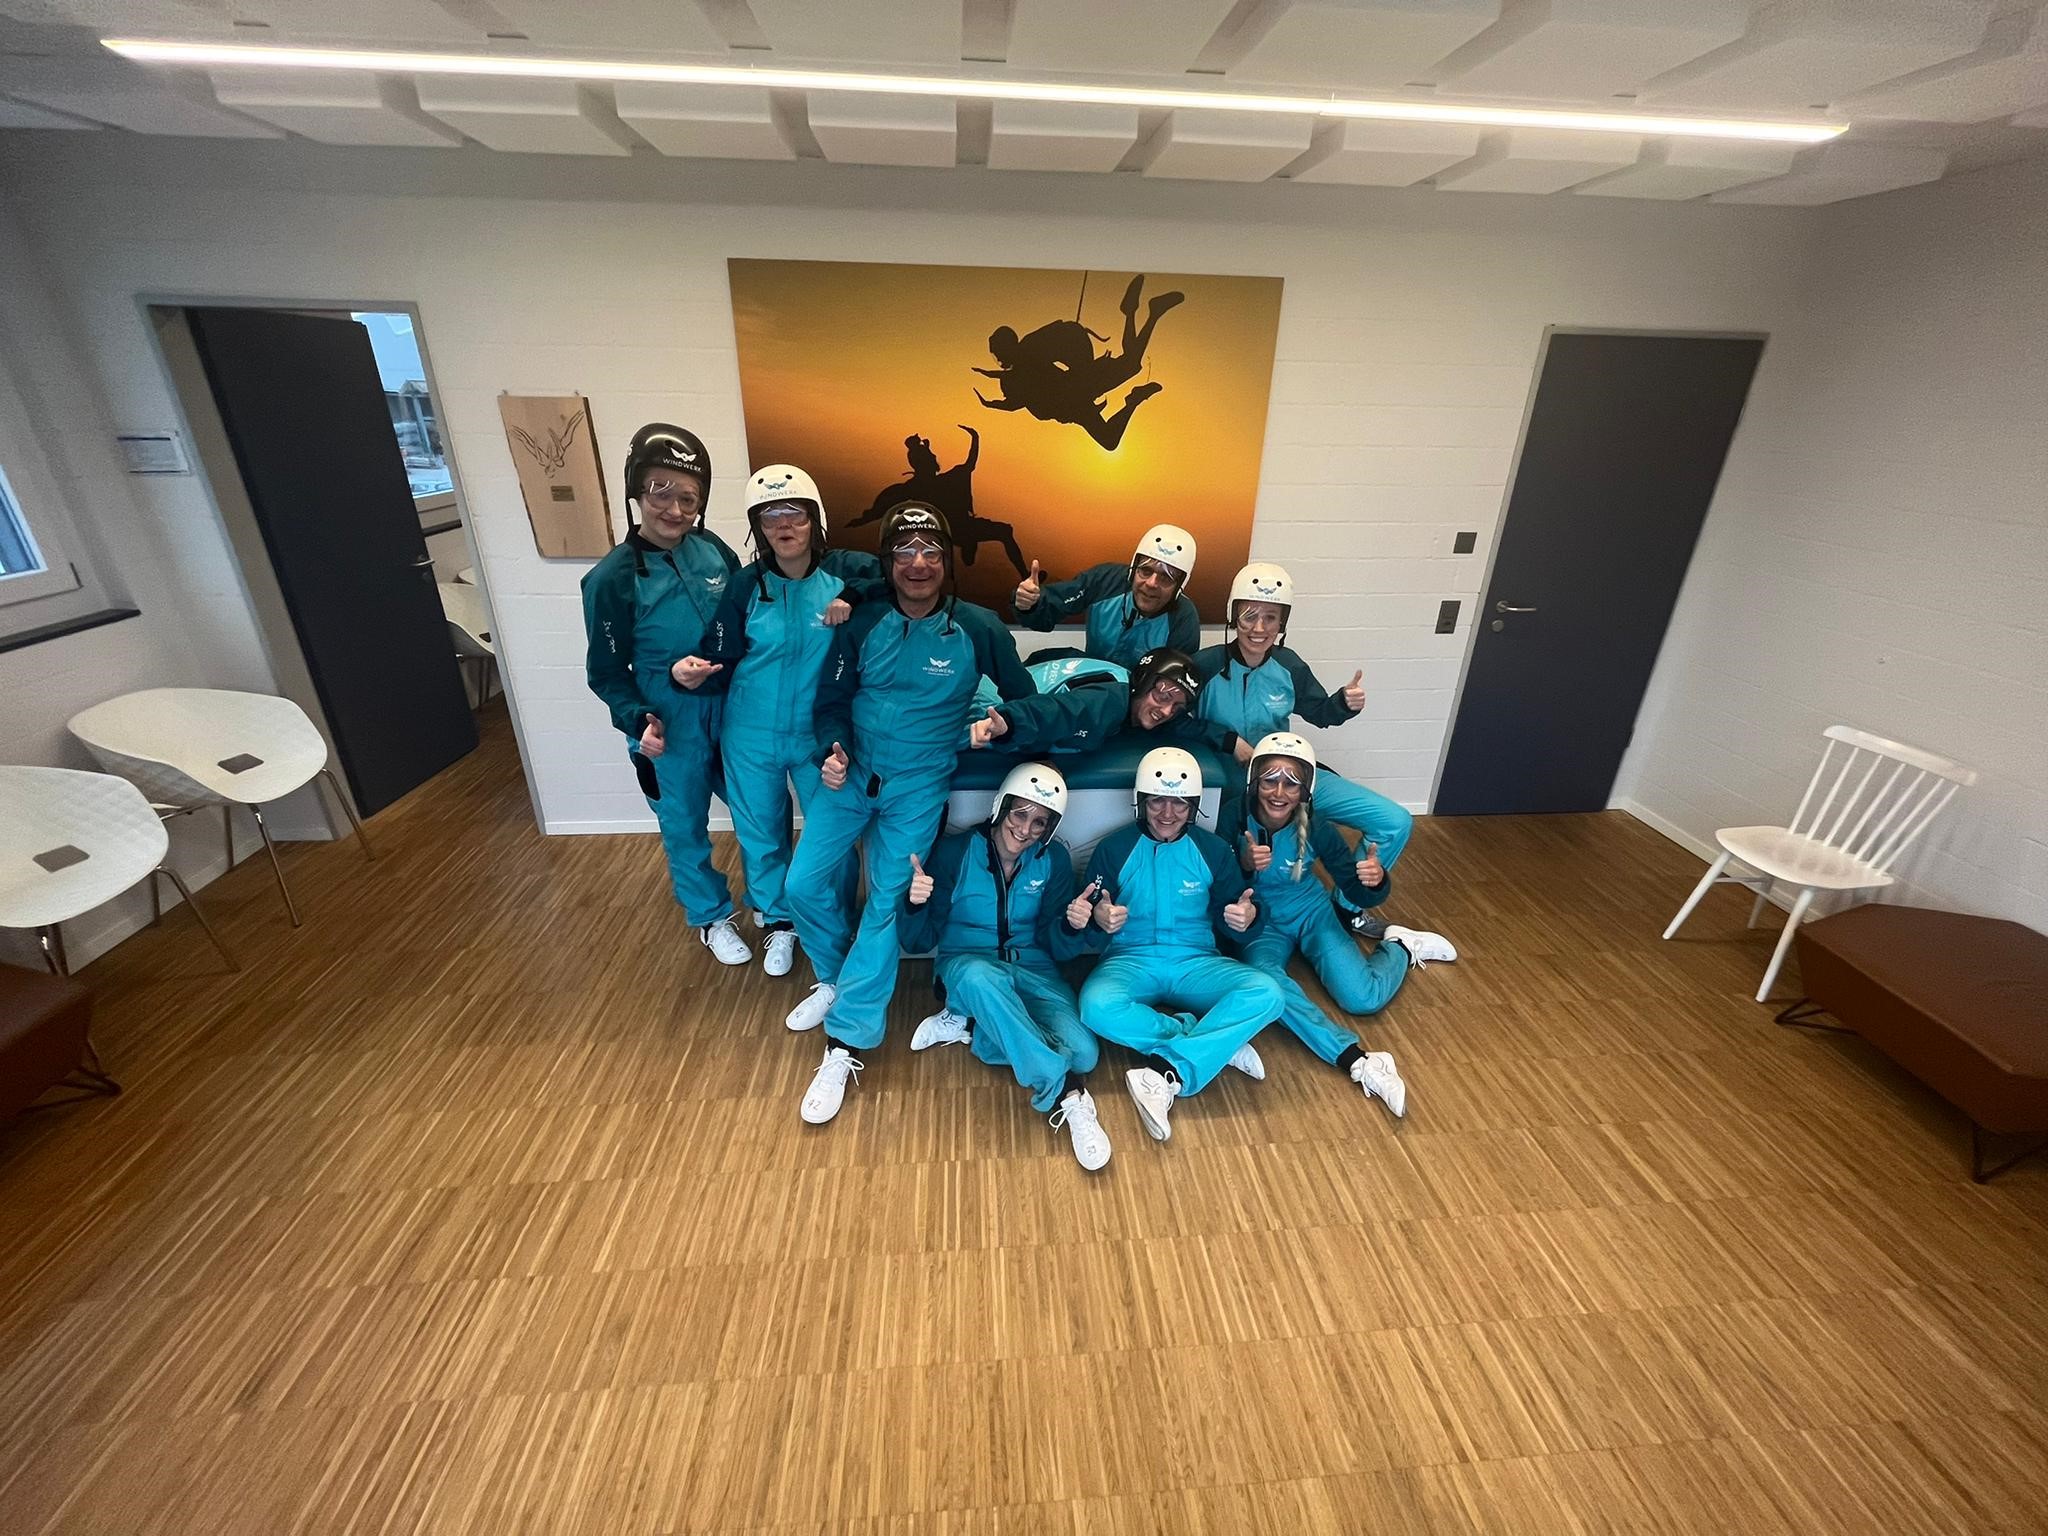 Die neun Mitarbeitenden des Pflegekaders der Schulthess Klinik wartet, ausgerüstet mit Schutzbrille, weissem Helm und türkisfarbenem Schutzanzug, auf den Start im Windkanal